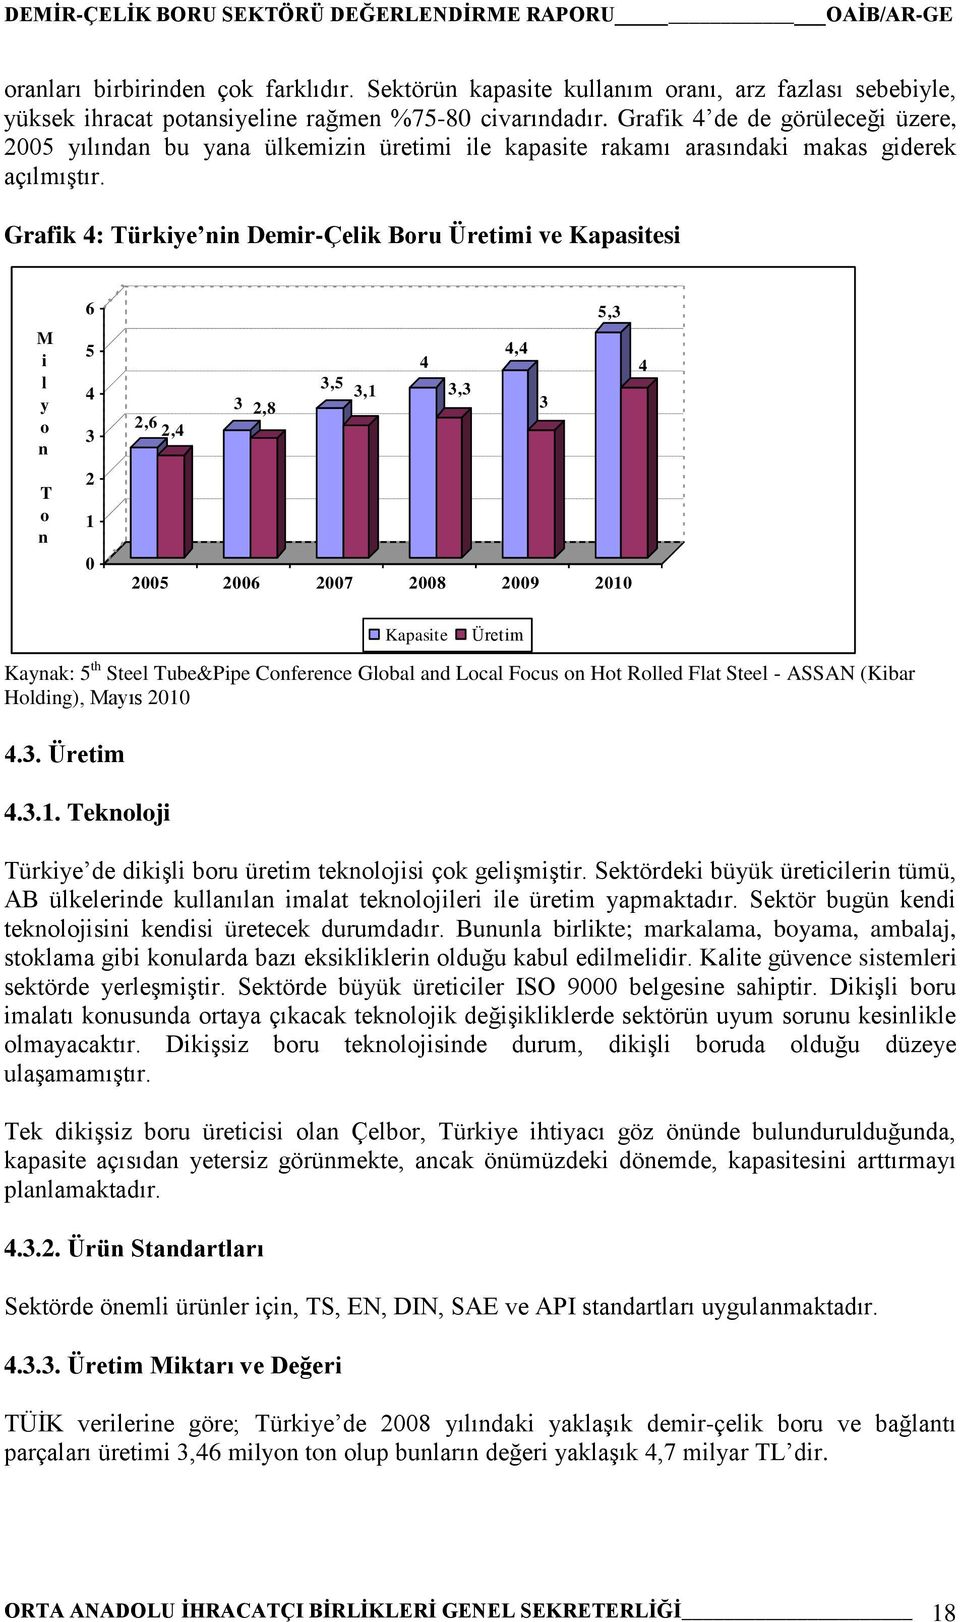 Grafik 4: Türkiye nin Demir-Çelik Boru Üretimi ve Kapasitesi M i l y o n T o n 6 5 4 3 2 1 0 5,3 4 3 4,4 4 3,5 3,1 3,3 3 2,6 2,4 2,8 2005 2006 2007 2008 2009 2010 Kapasite Üretim Kaynak: 5 th Steel